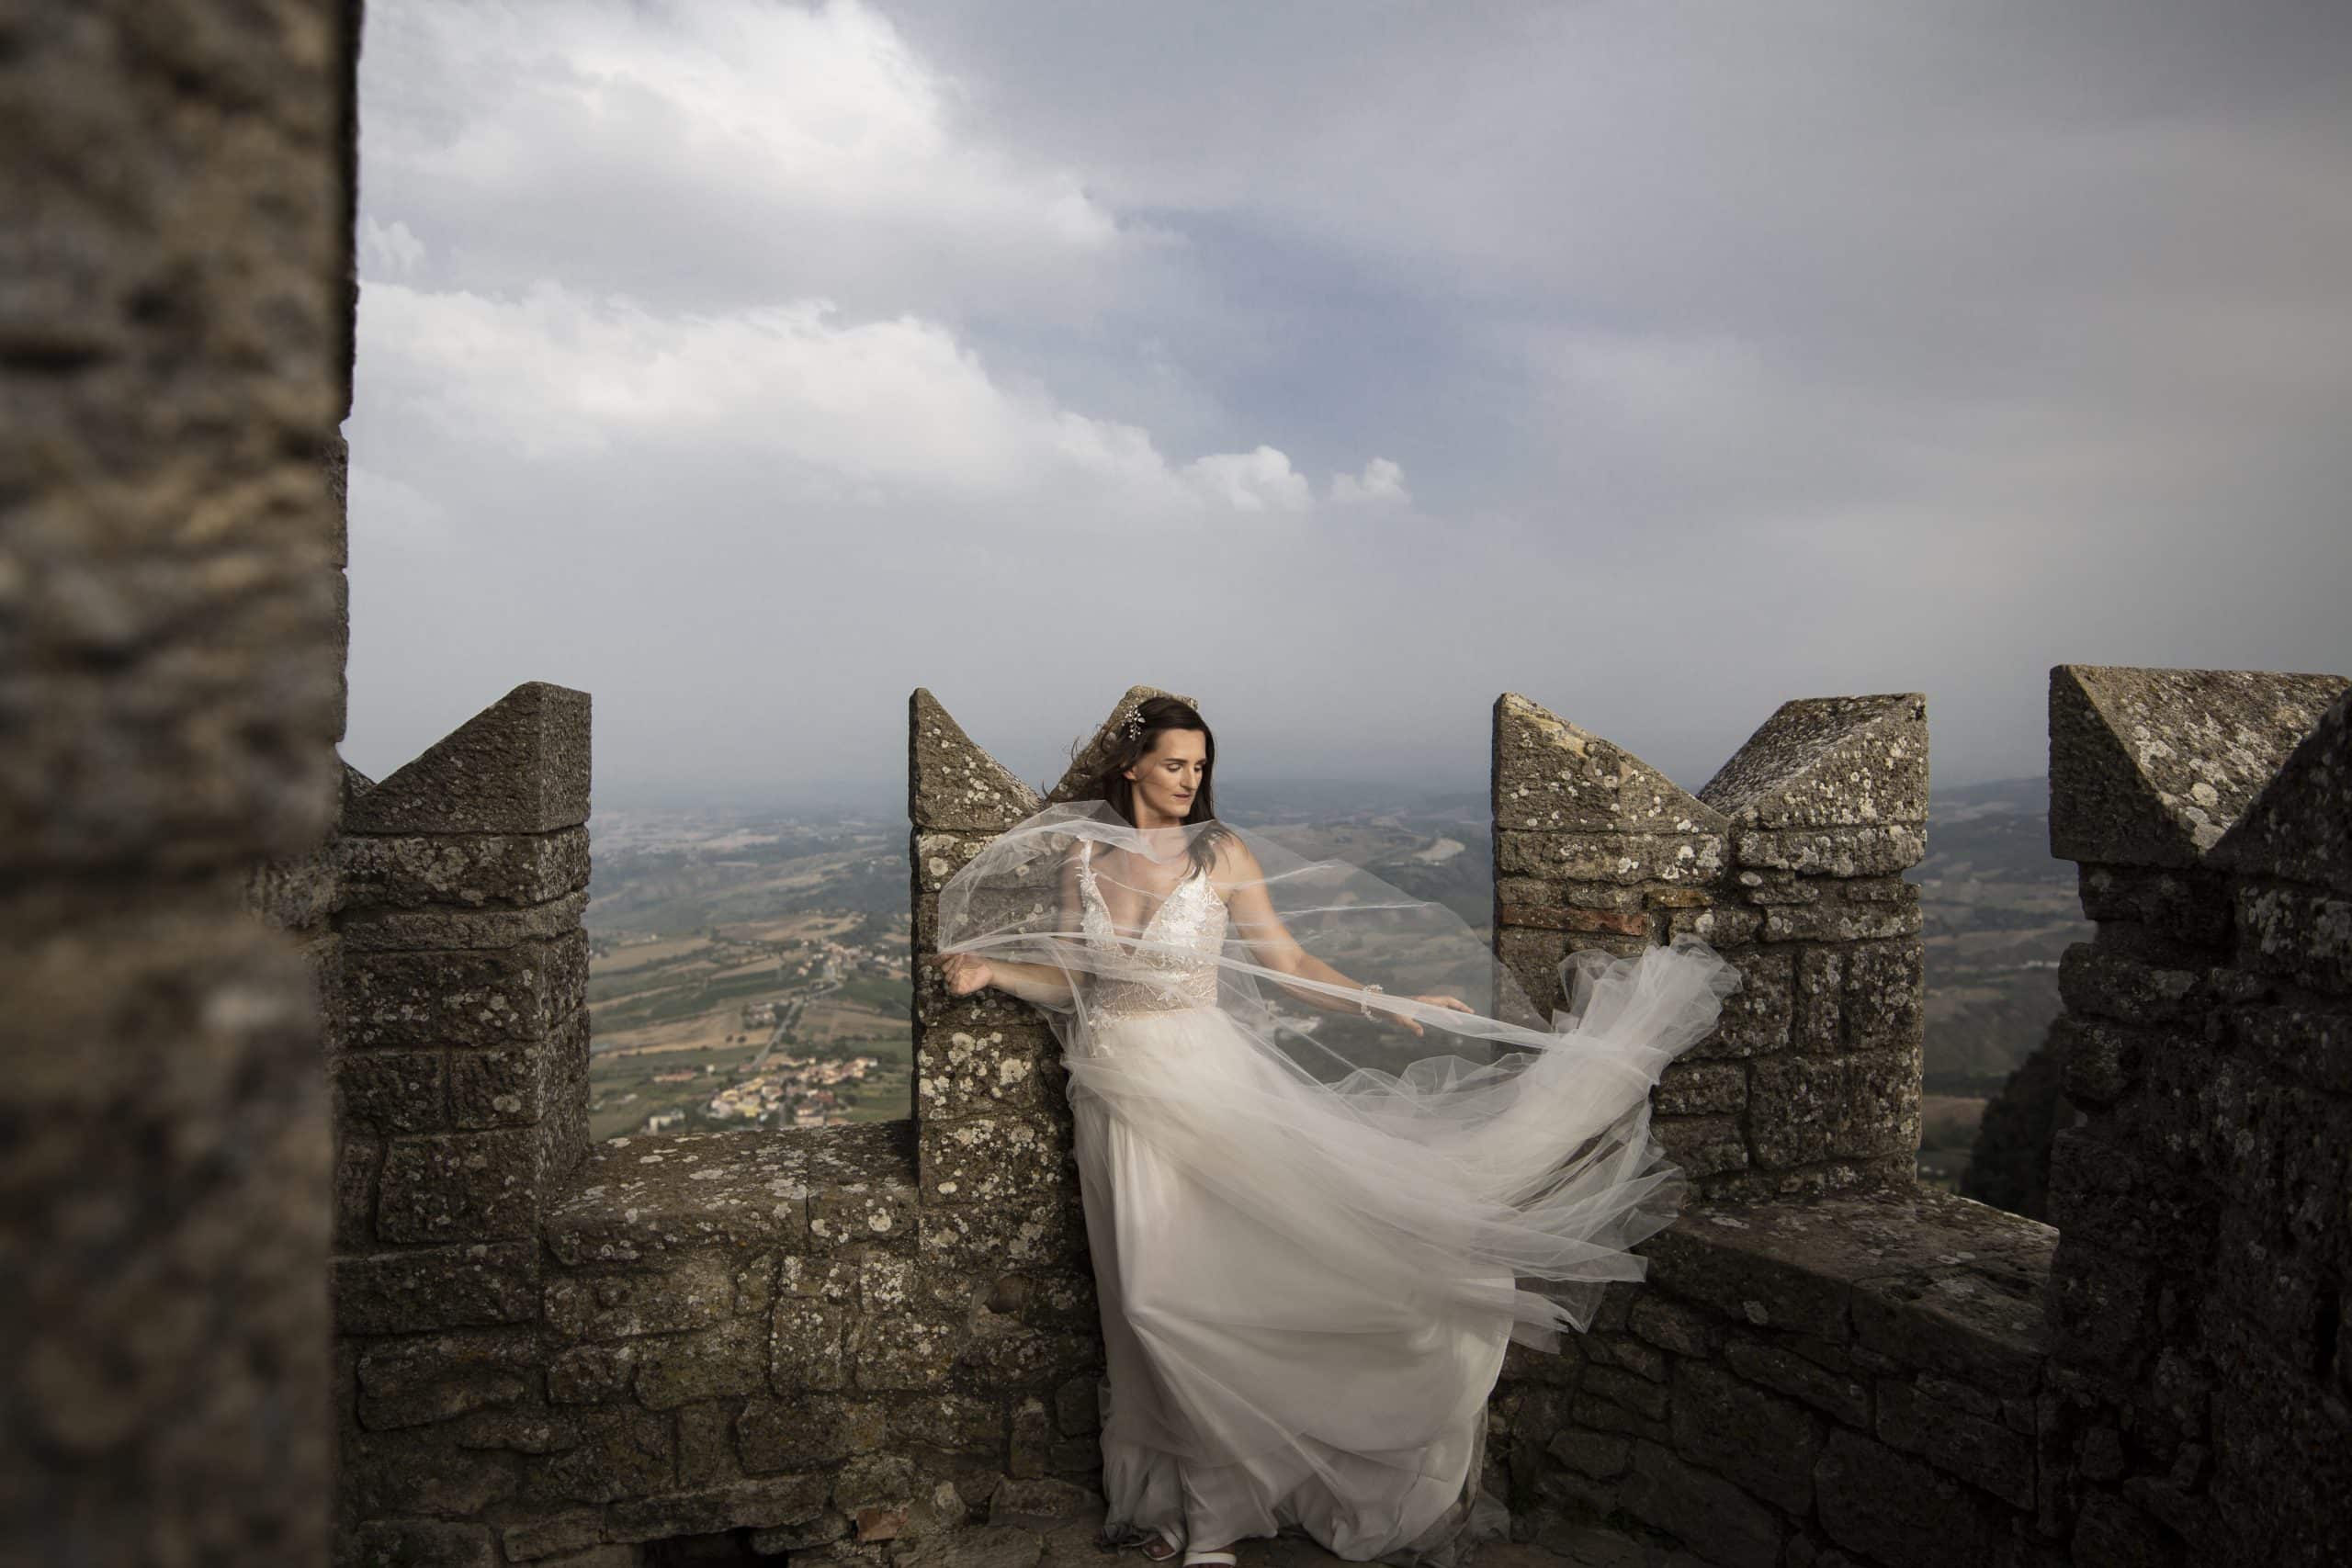 Vilma Wedding & Event Planner _ Vilma Rapšaitė _ vestuvių planavimas organizavimas koordinavimas Italijoje 2023 2024 _ slaptos vestuvės _ santuoka užsienyje